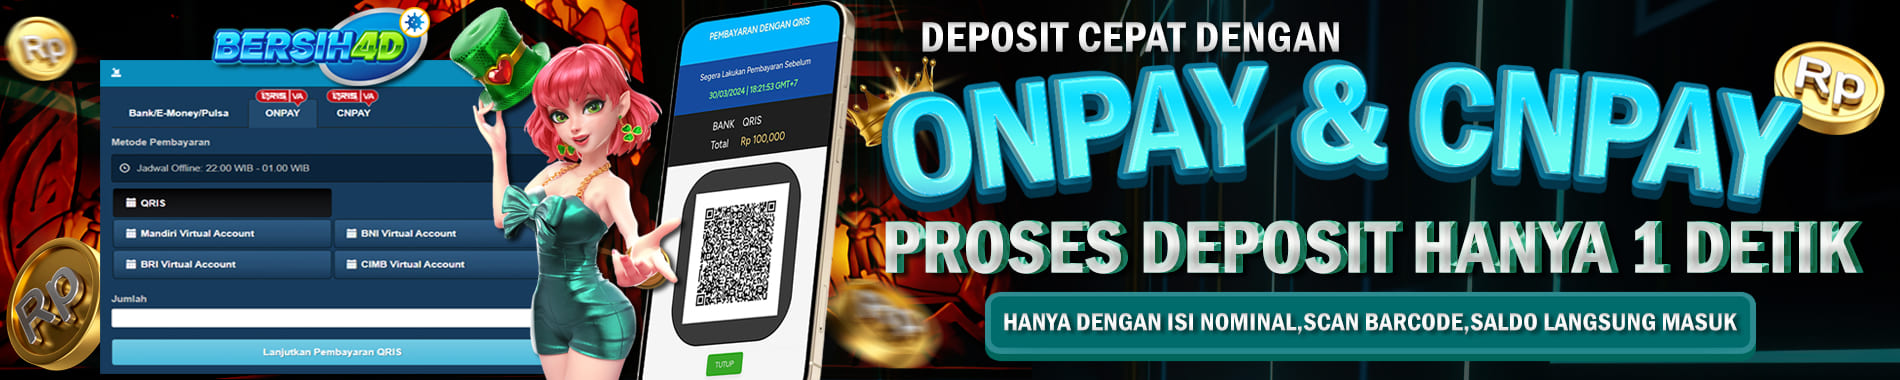 bersih4d deposit cepat dengan onpay dan cnpay